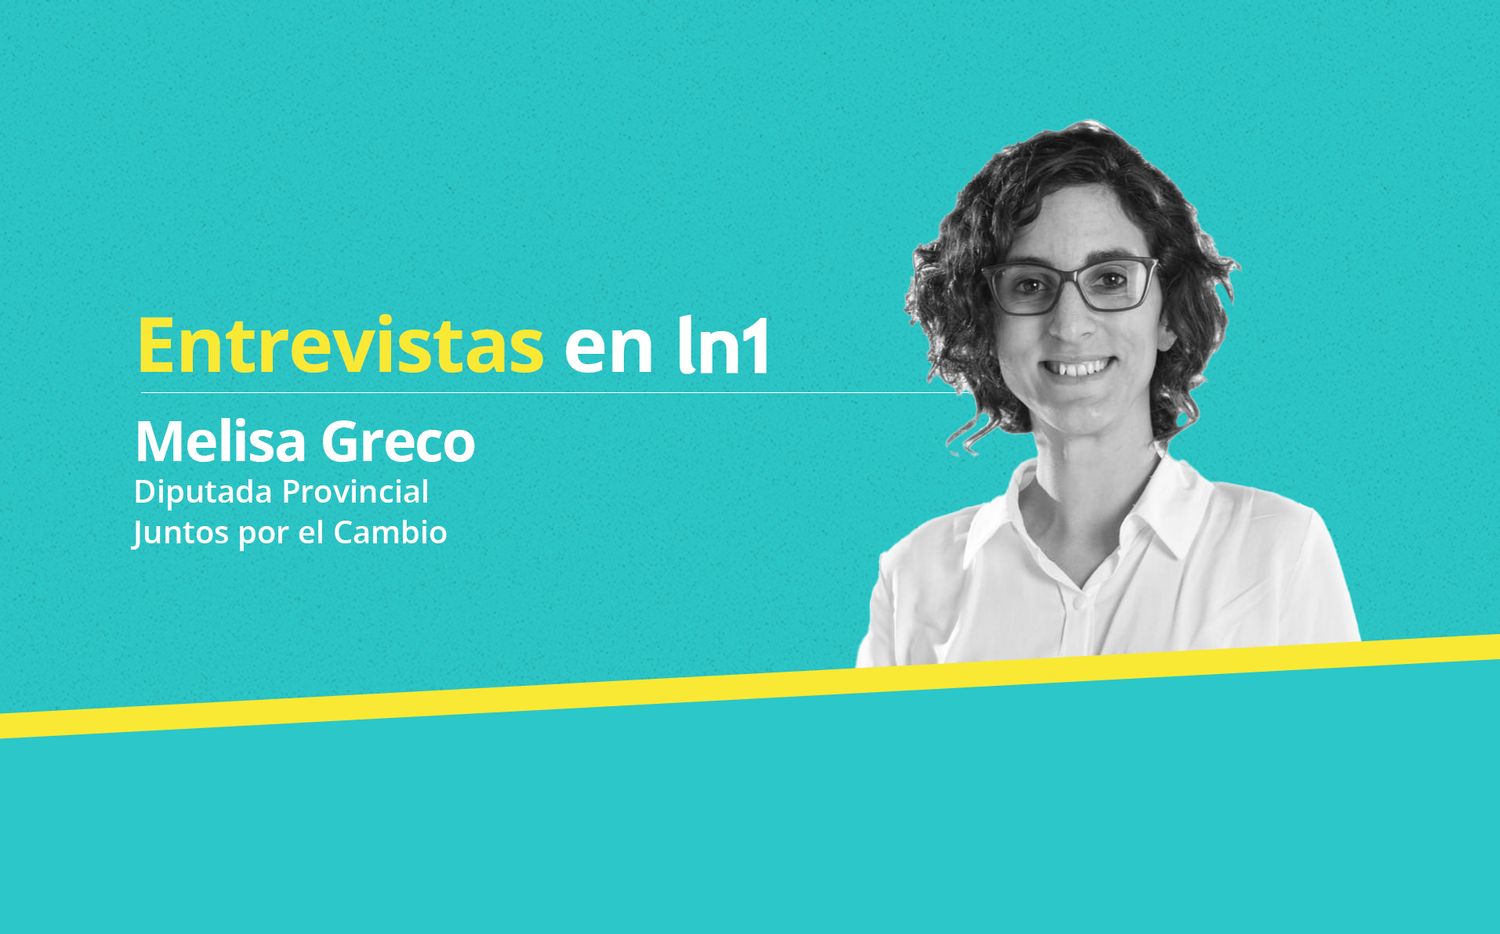 Melisa Greco: “Seguir hablando de la dicotomía entre Peronismo y Radicalismo hoy no tiene sentido”